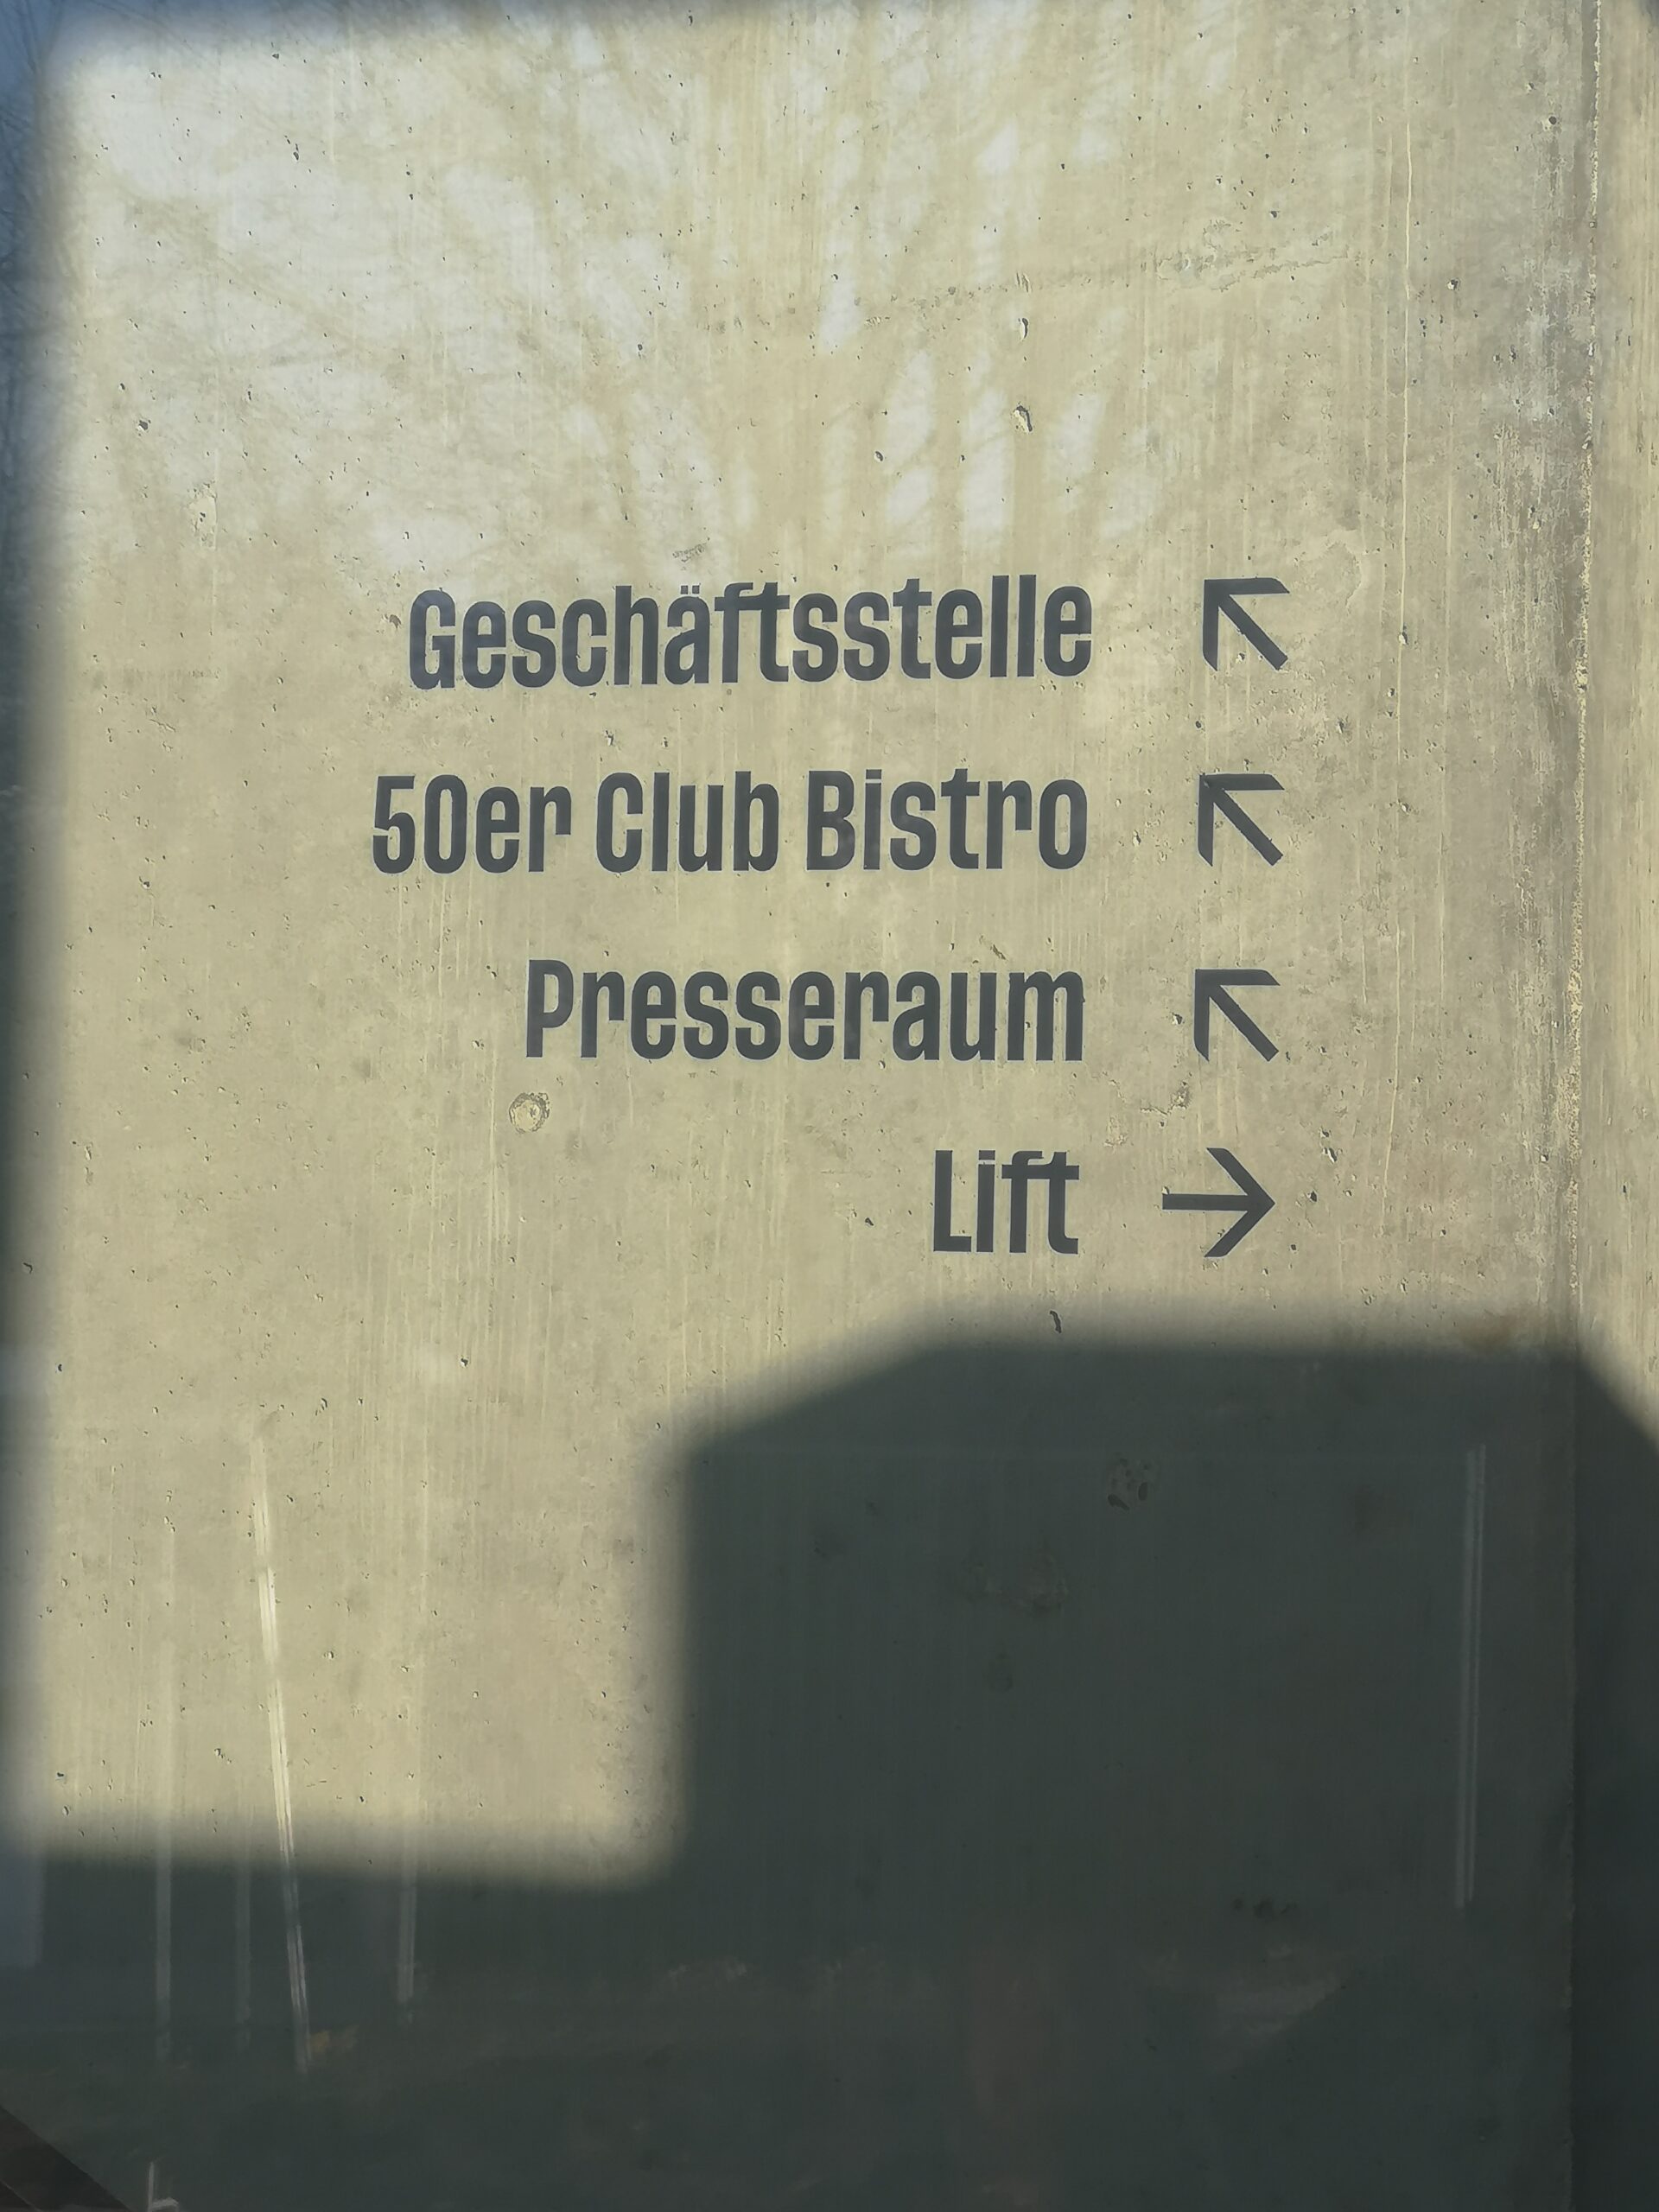 Beschriftung Geschäftsstelle Presseraum 50er Club